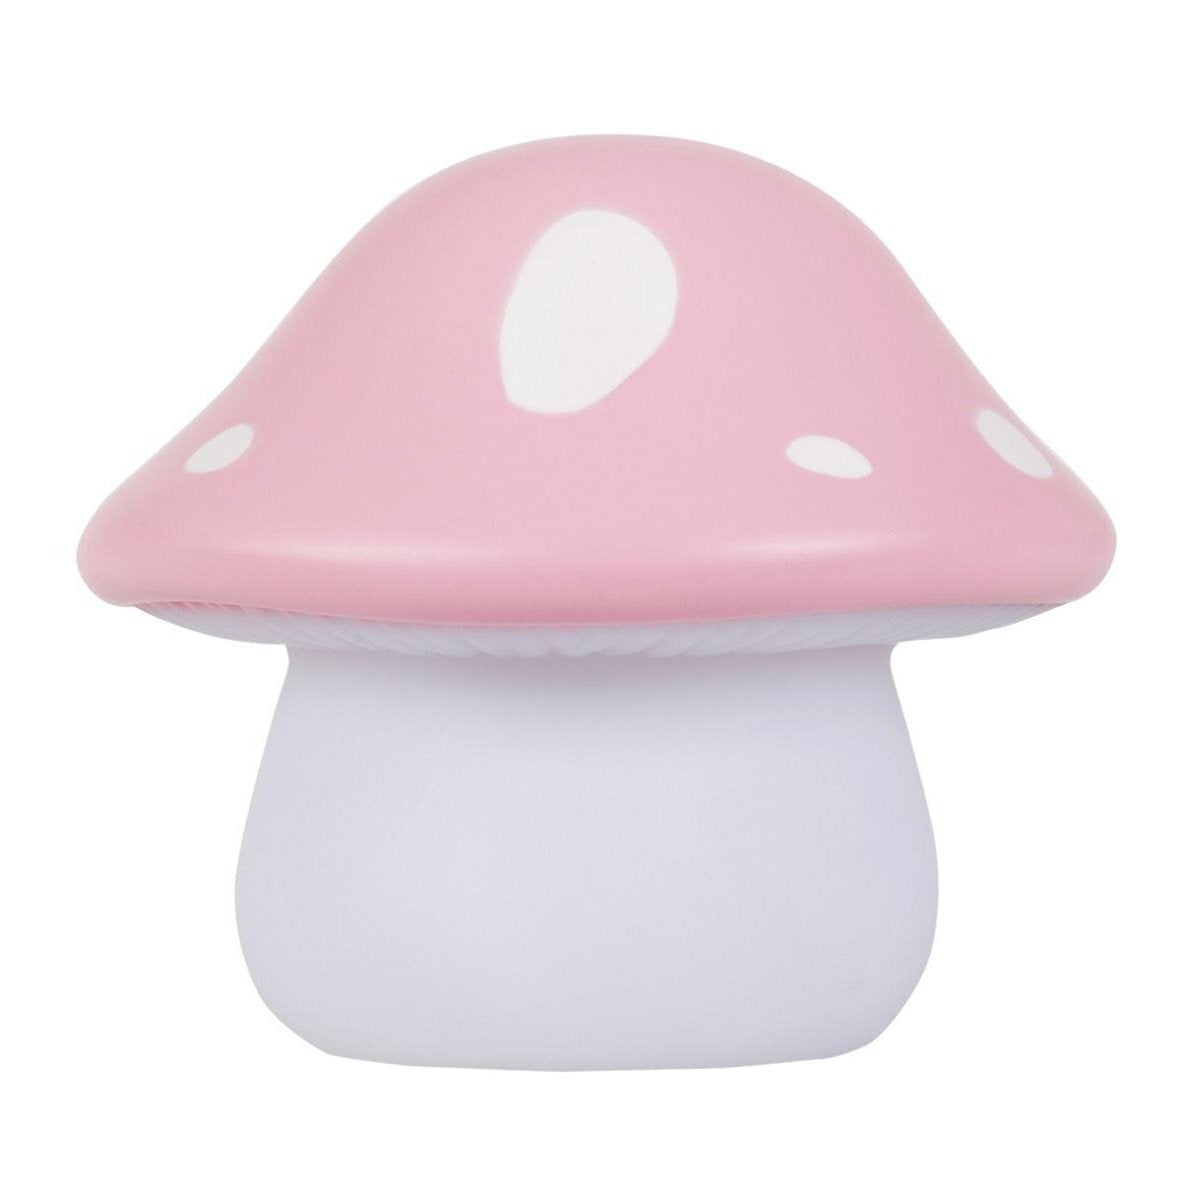 a-little-lovely-company-little-light-mushroom- (2)